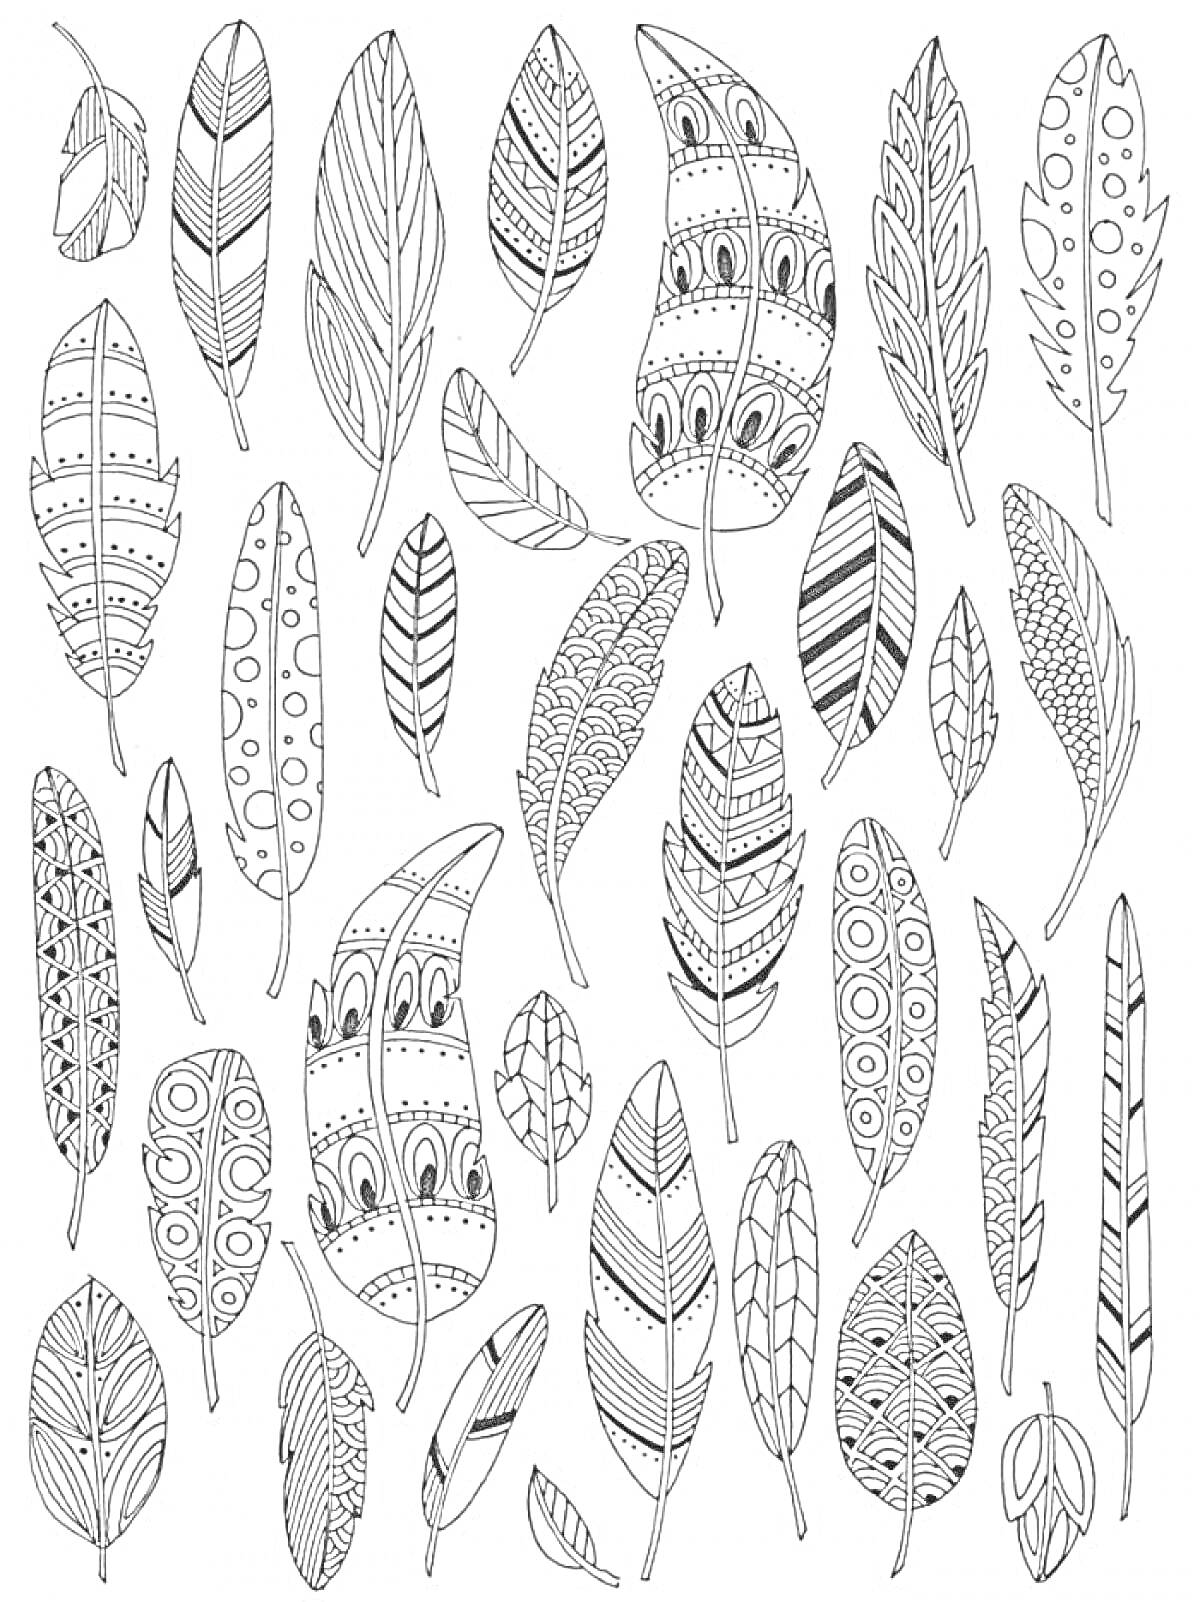 Раскраска Раскраска с различными перьями с геометрическими и растительными узорами